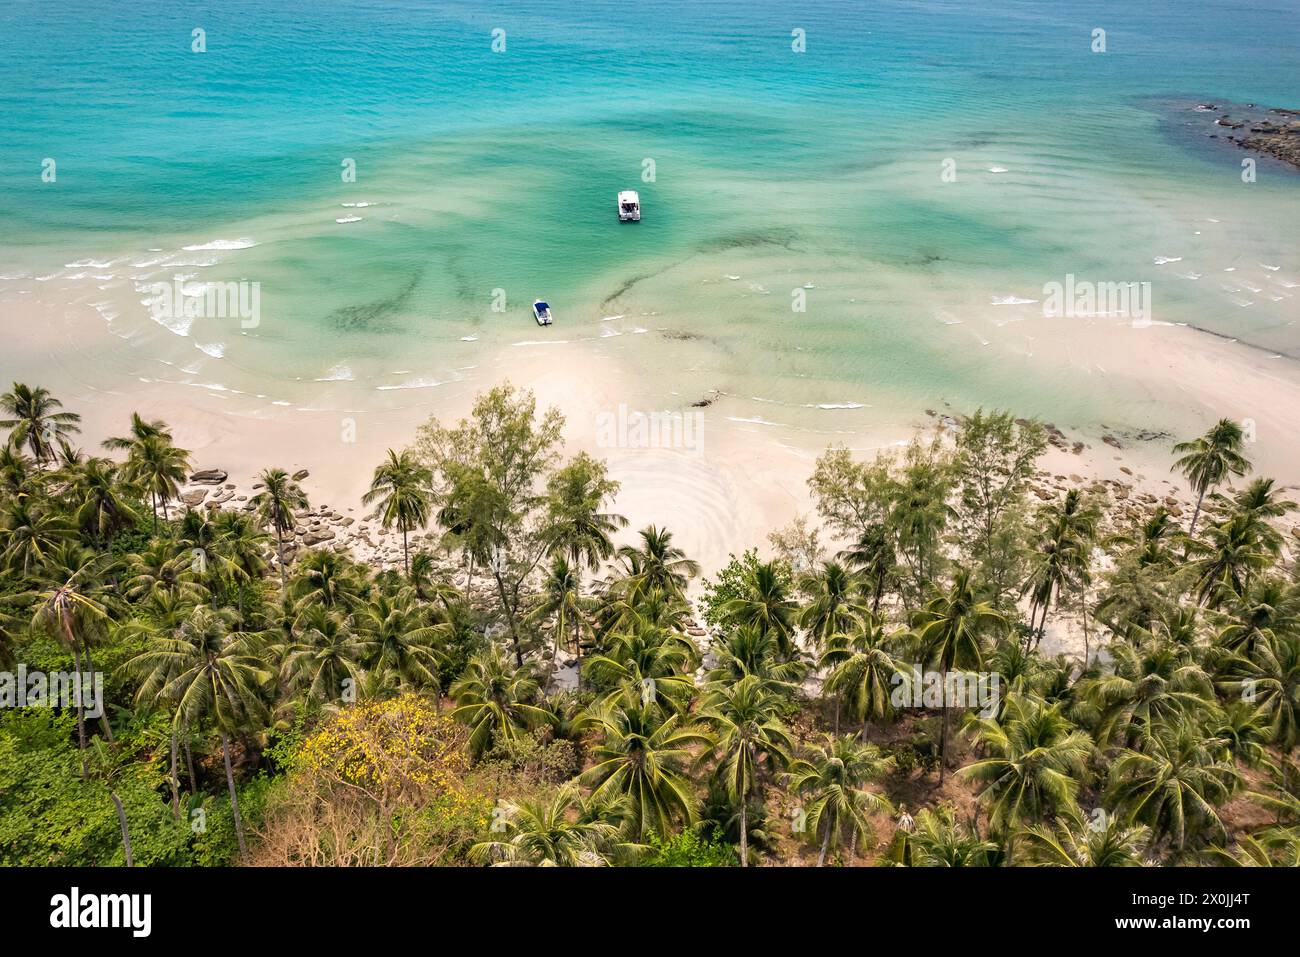 Vue aérienne de la plage de Khlong Yai Kee, de l'île de Ko Kut ou de Koh Kood dans le golfe de Thaïlande, en Asie Banque D'Images